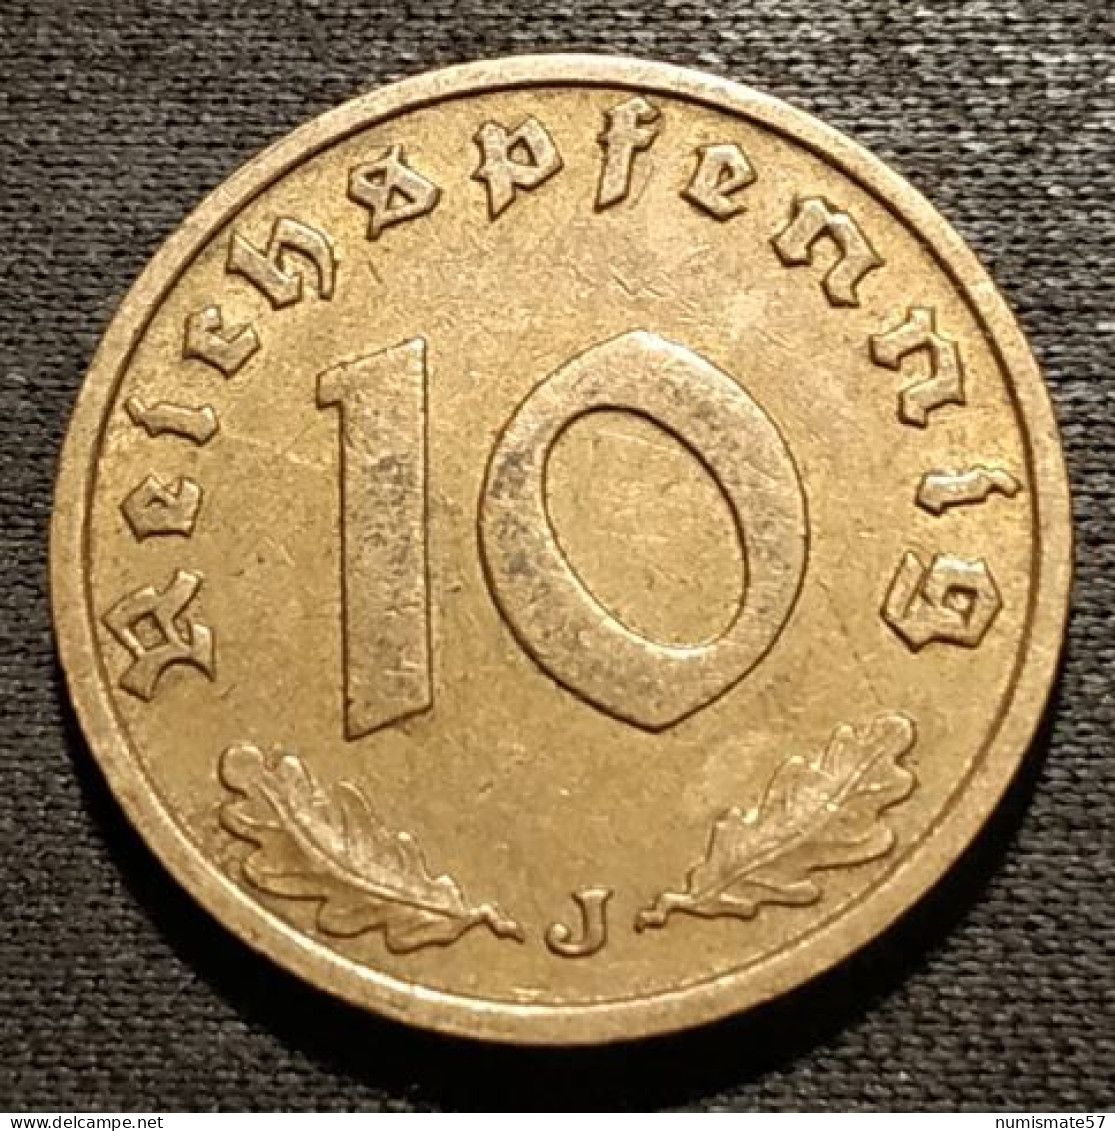 ALLEMAGNE - GERMANY - 10 REICHSPFENNIG 1938 J - KM 92 - 10 Reichspfennig